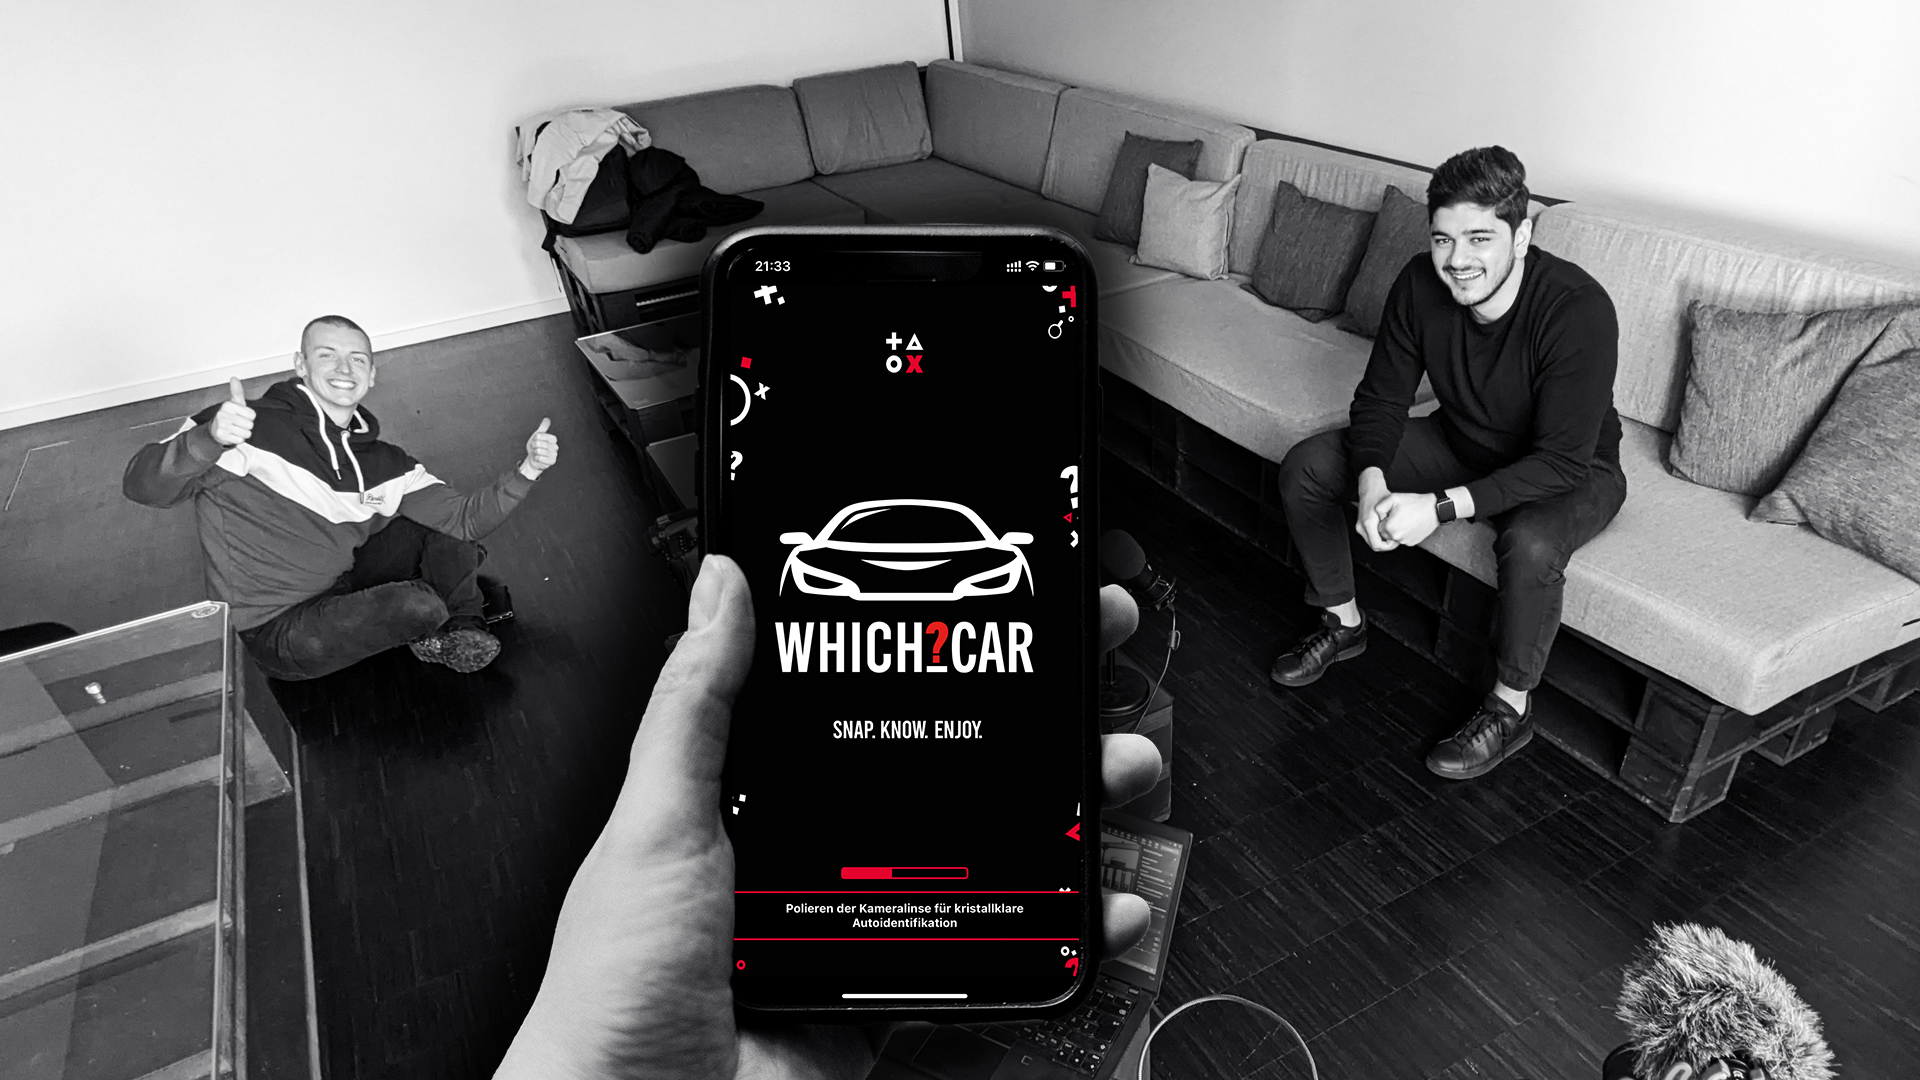 Unsere WhichCar-App – Ein Studentenprojekt für das Smartphone